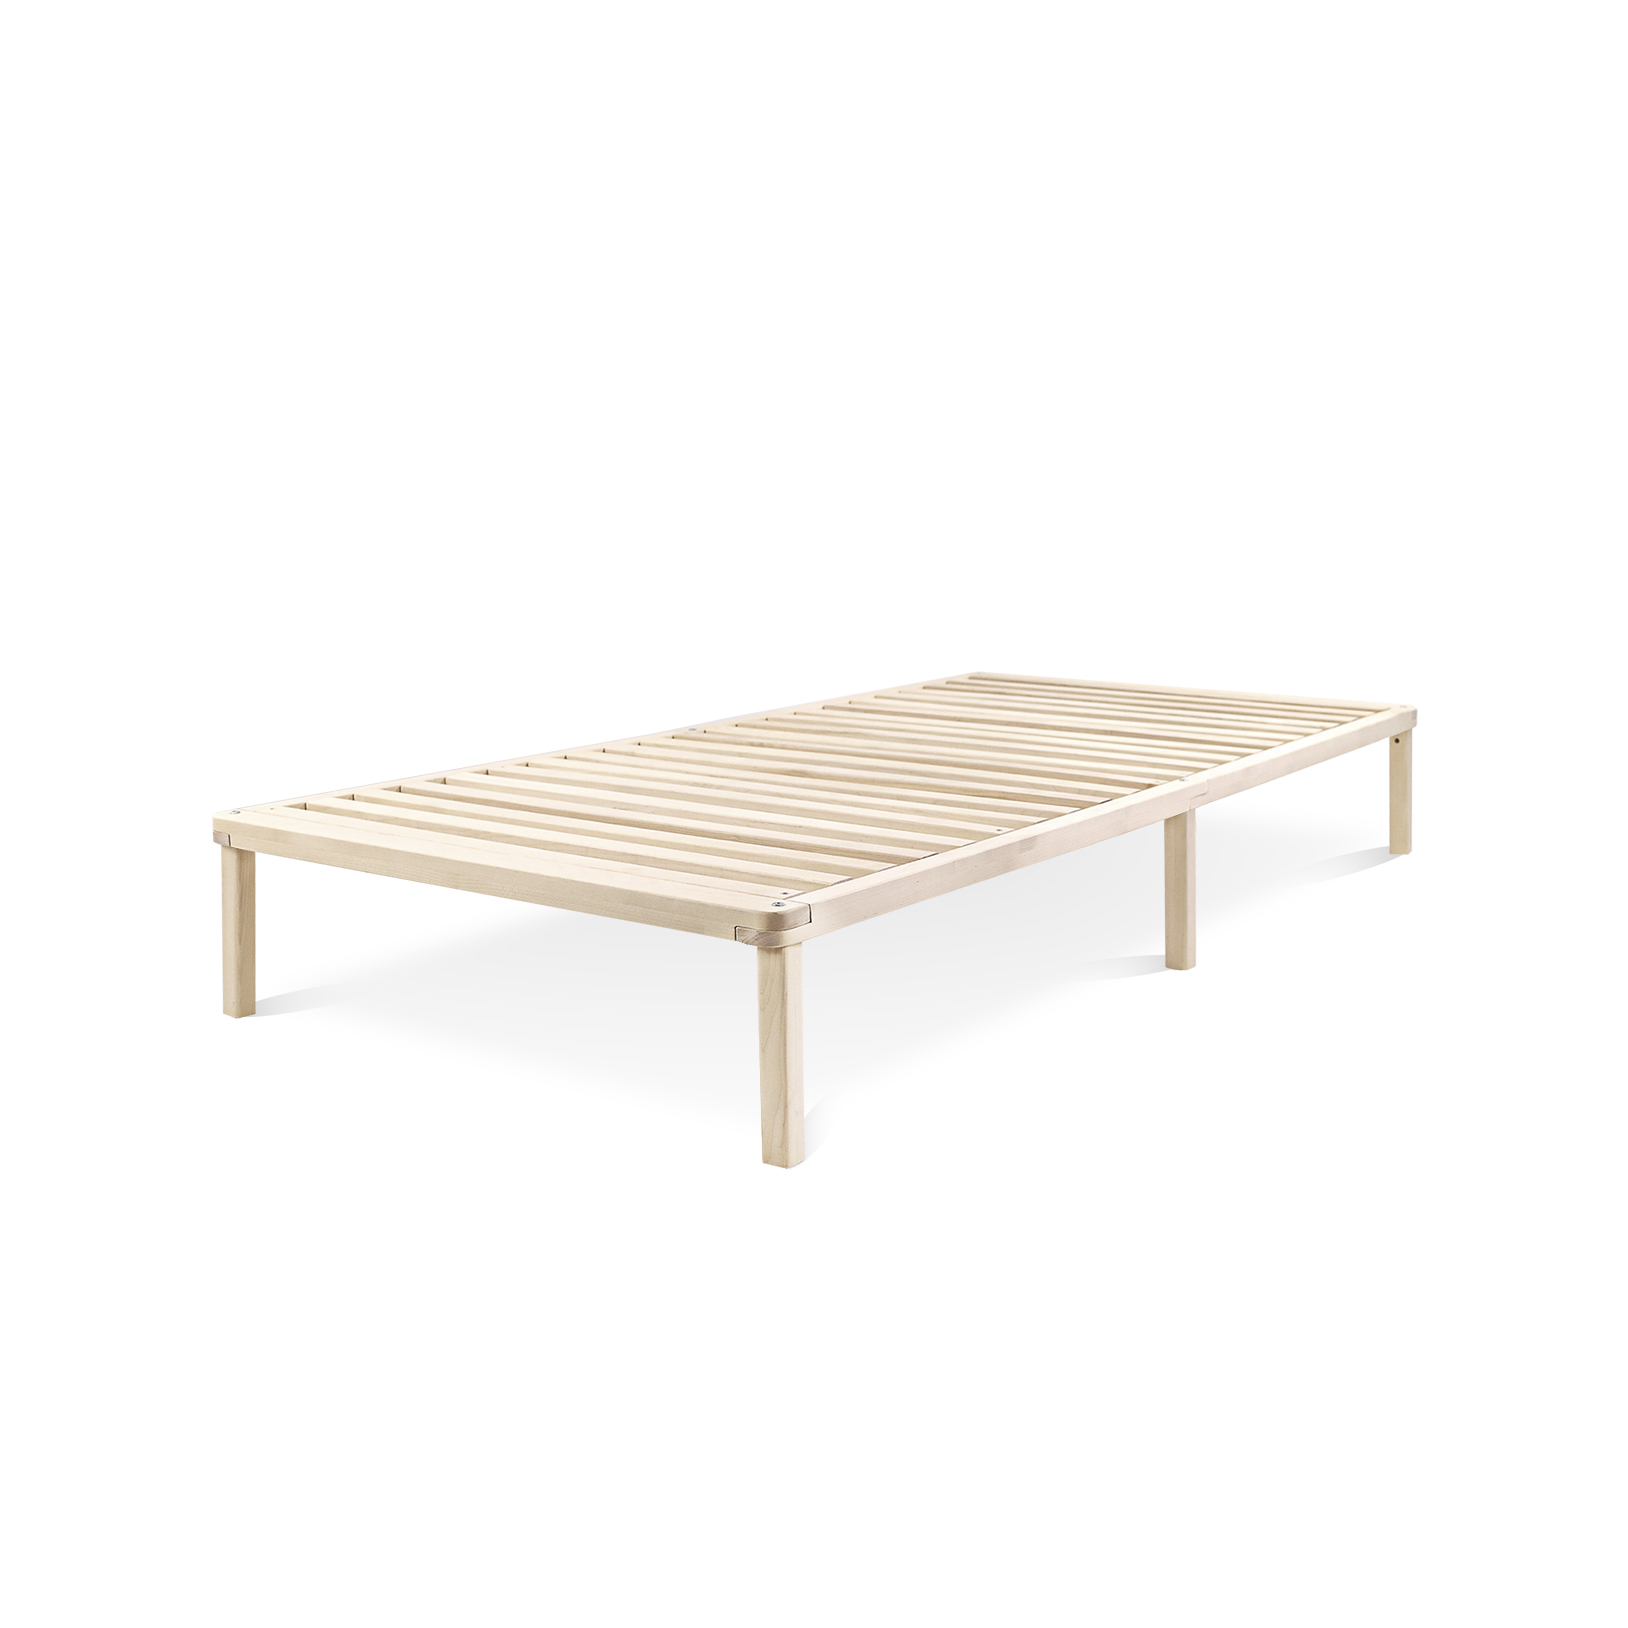 фото Кровать односпальная деревянная hansales 70x200 см из массива берёзы light sleep